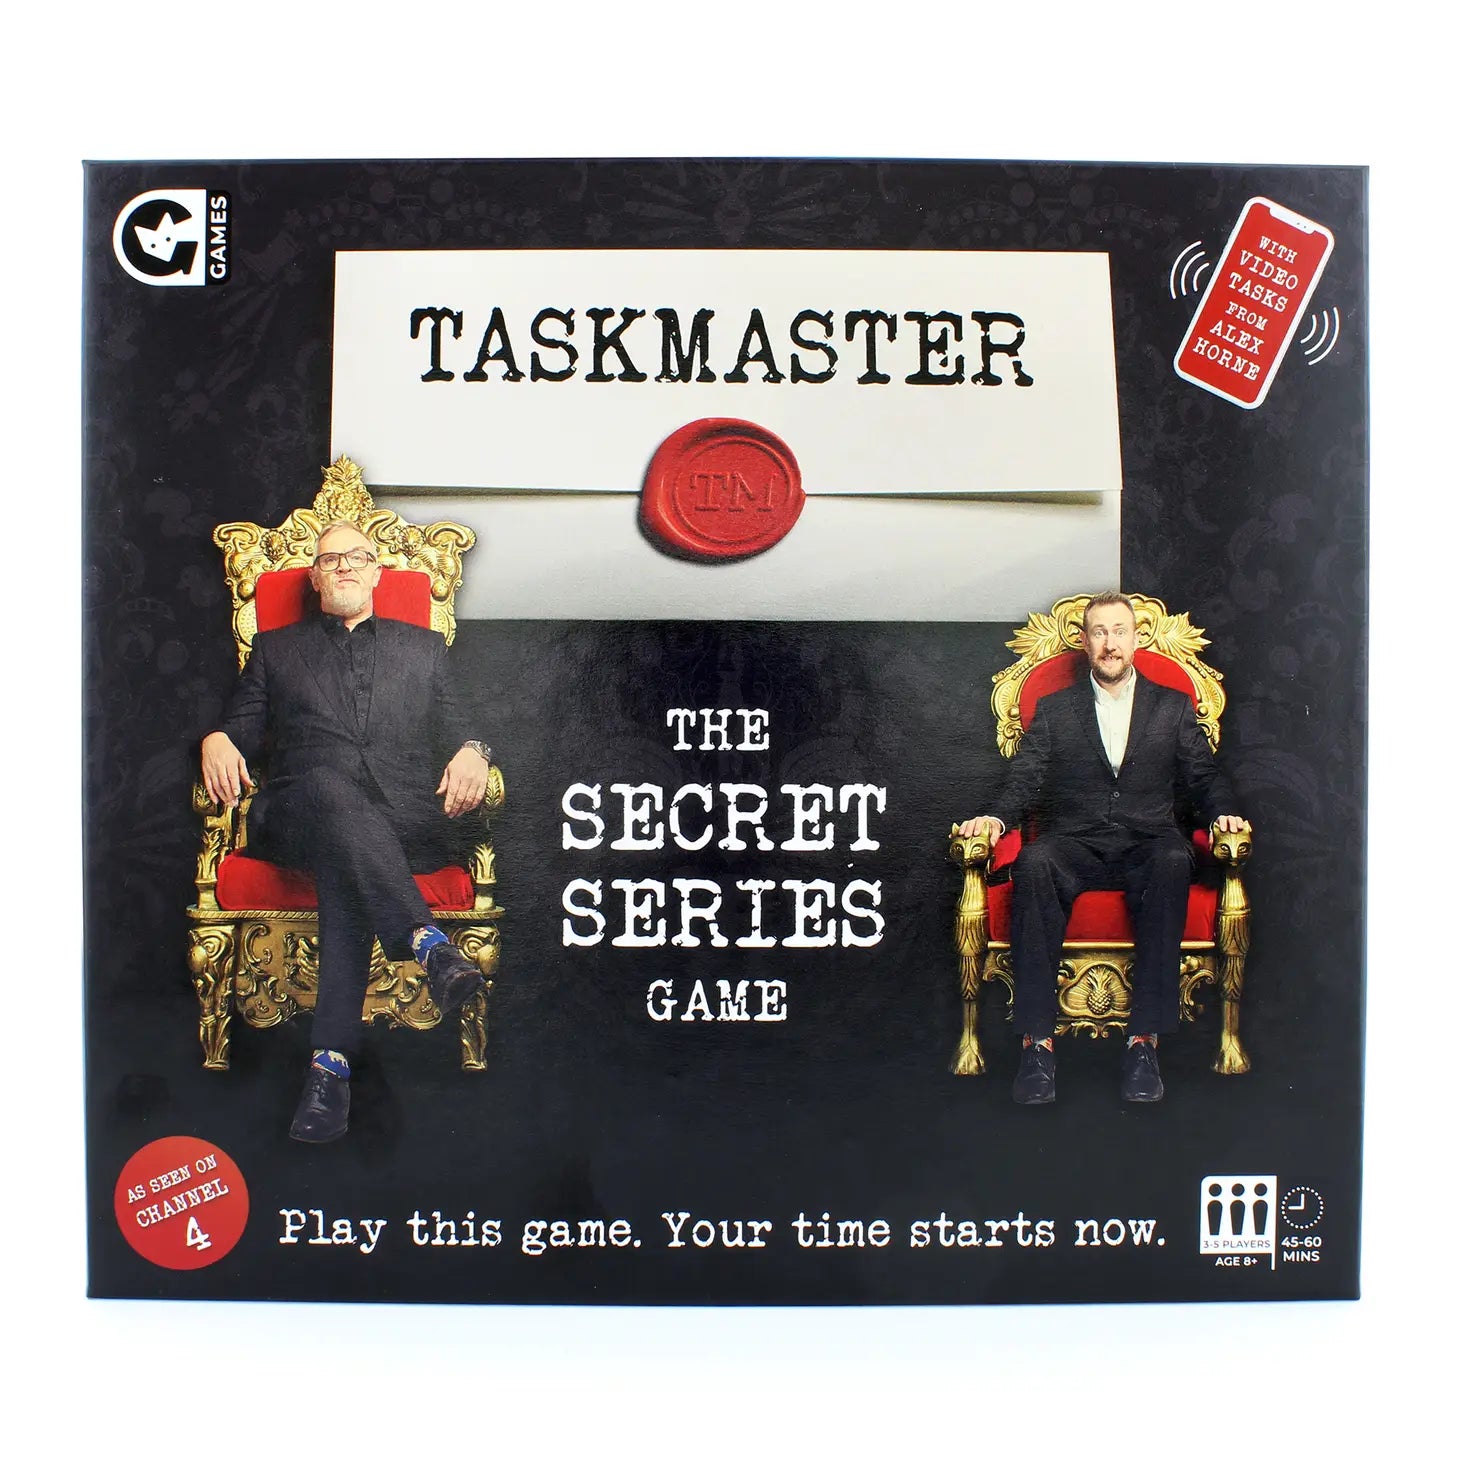 TASKMASTER: The Secret Series Game